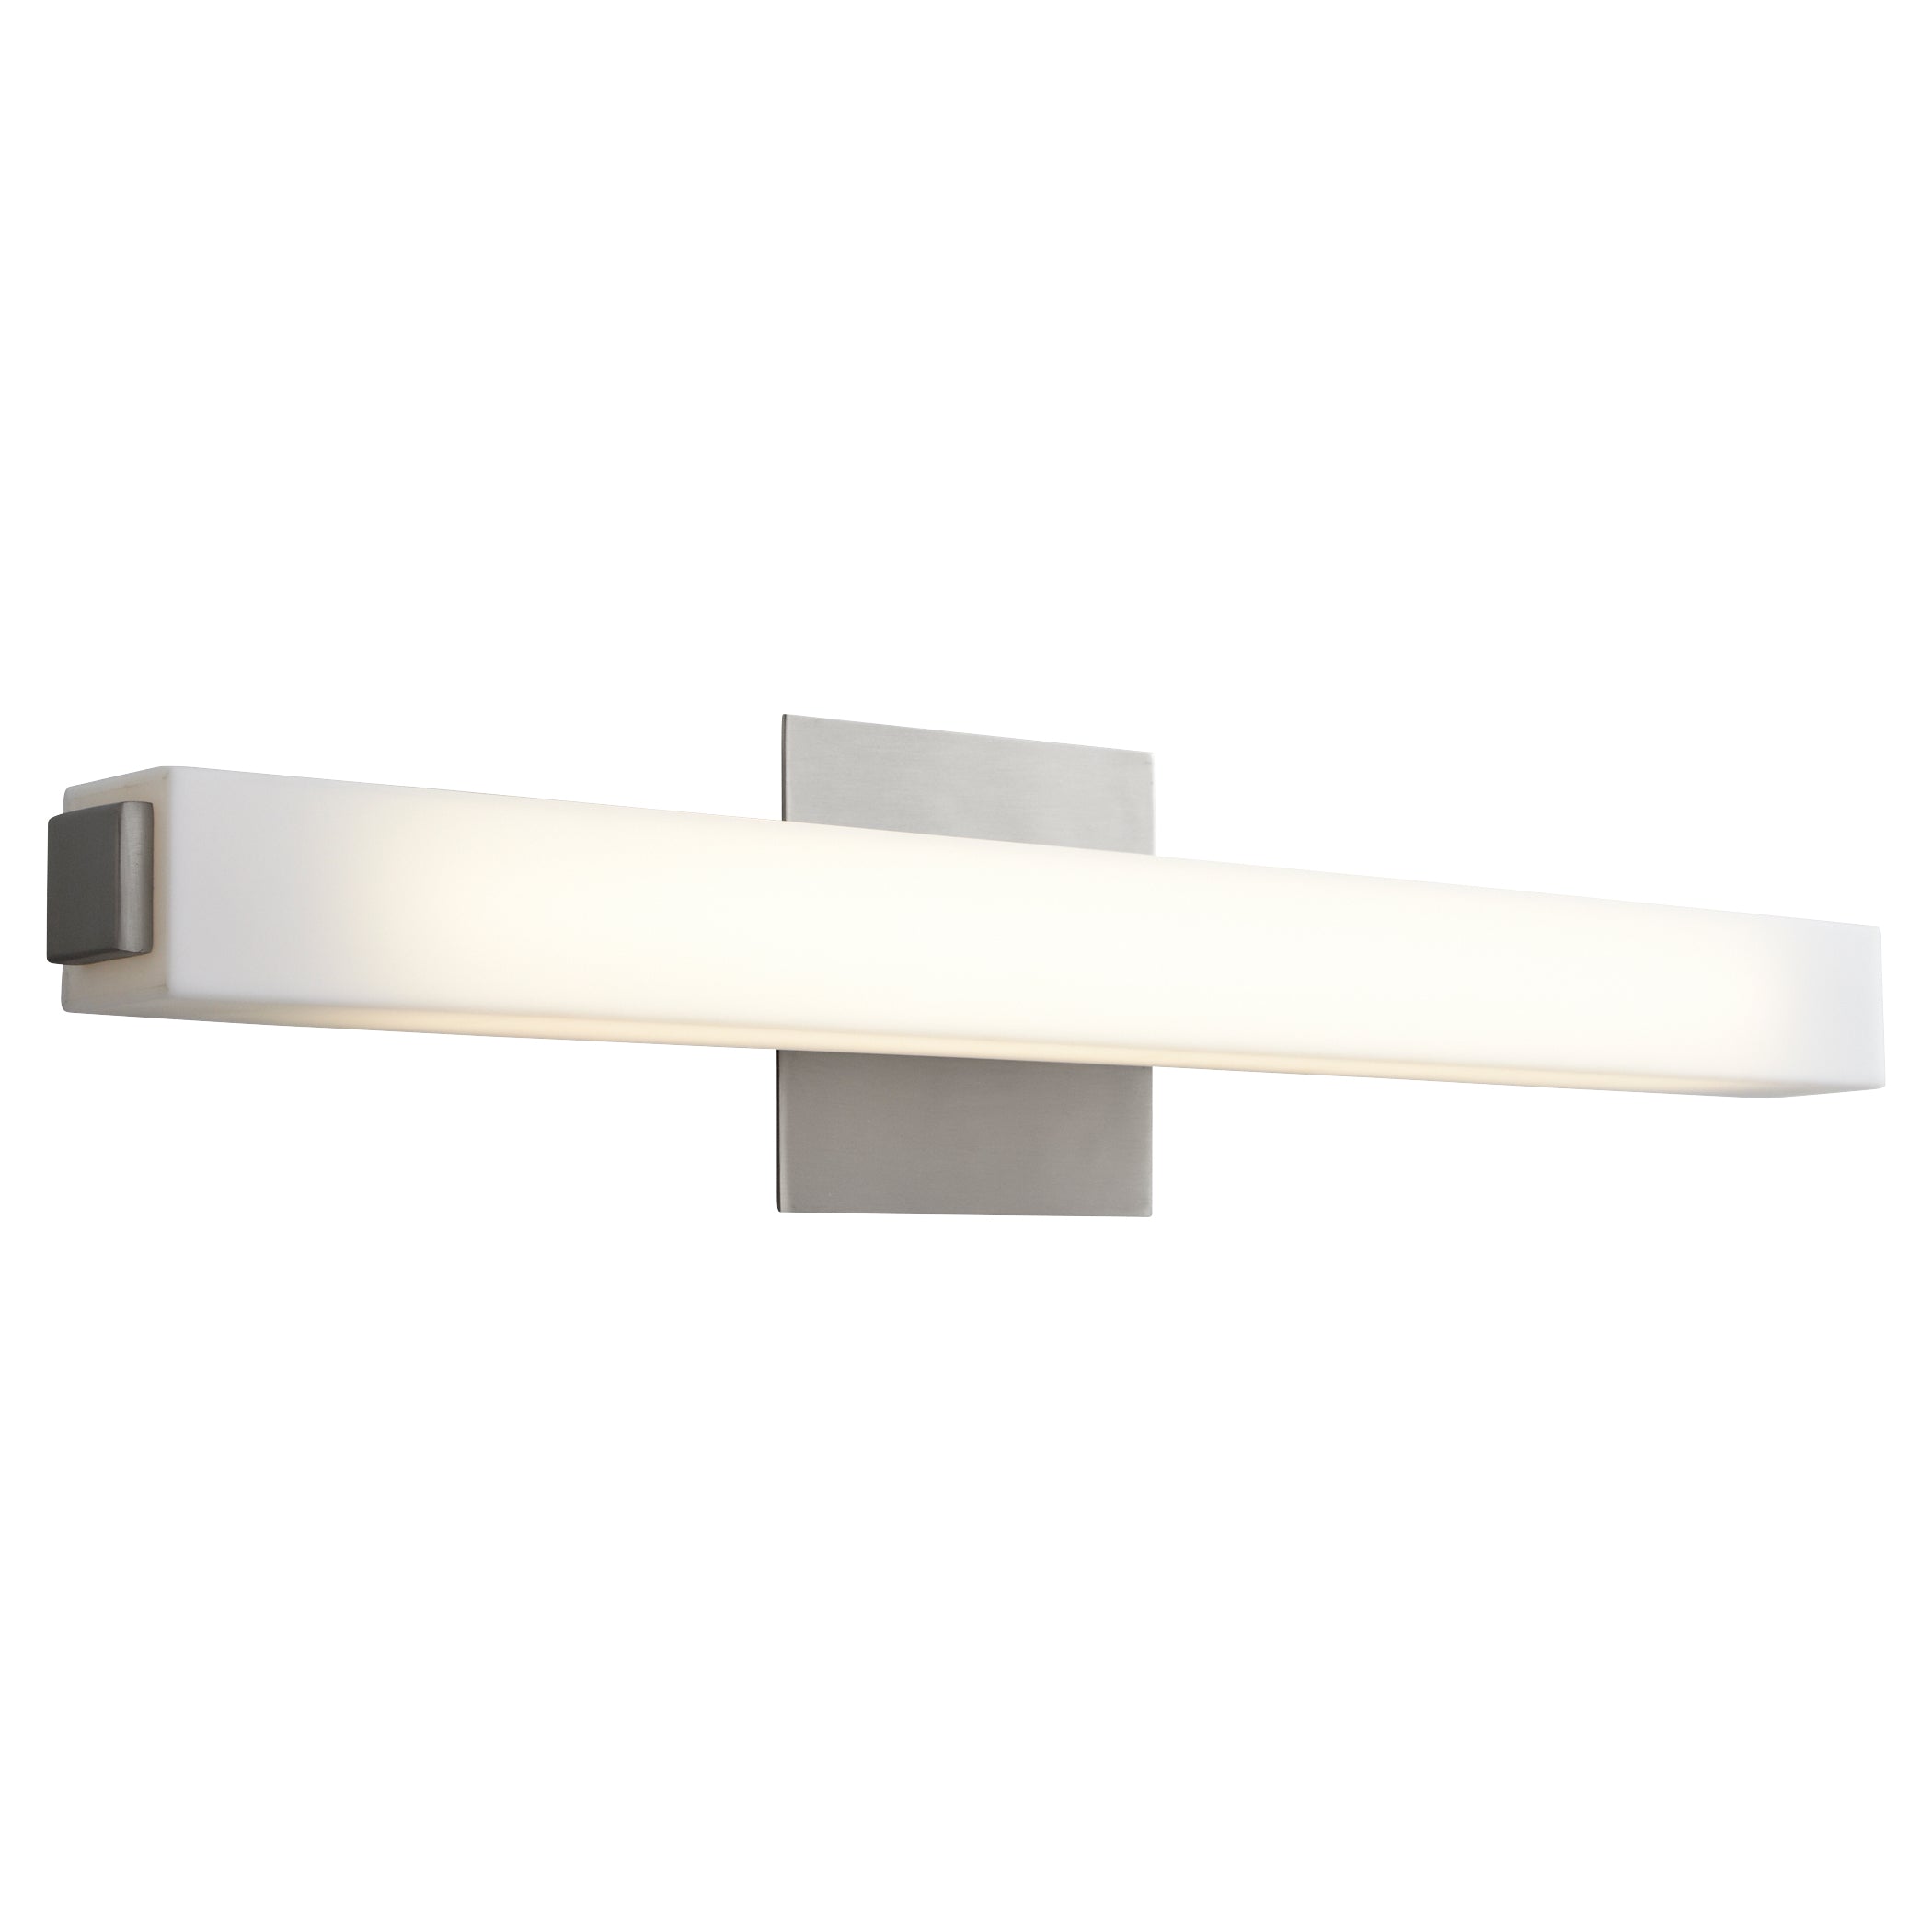 Oxygen Adelphi 3-537-24 Bathroom Vanity Light Fixture - Satin Nickel